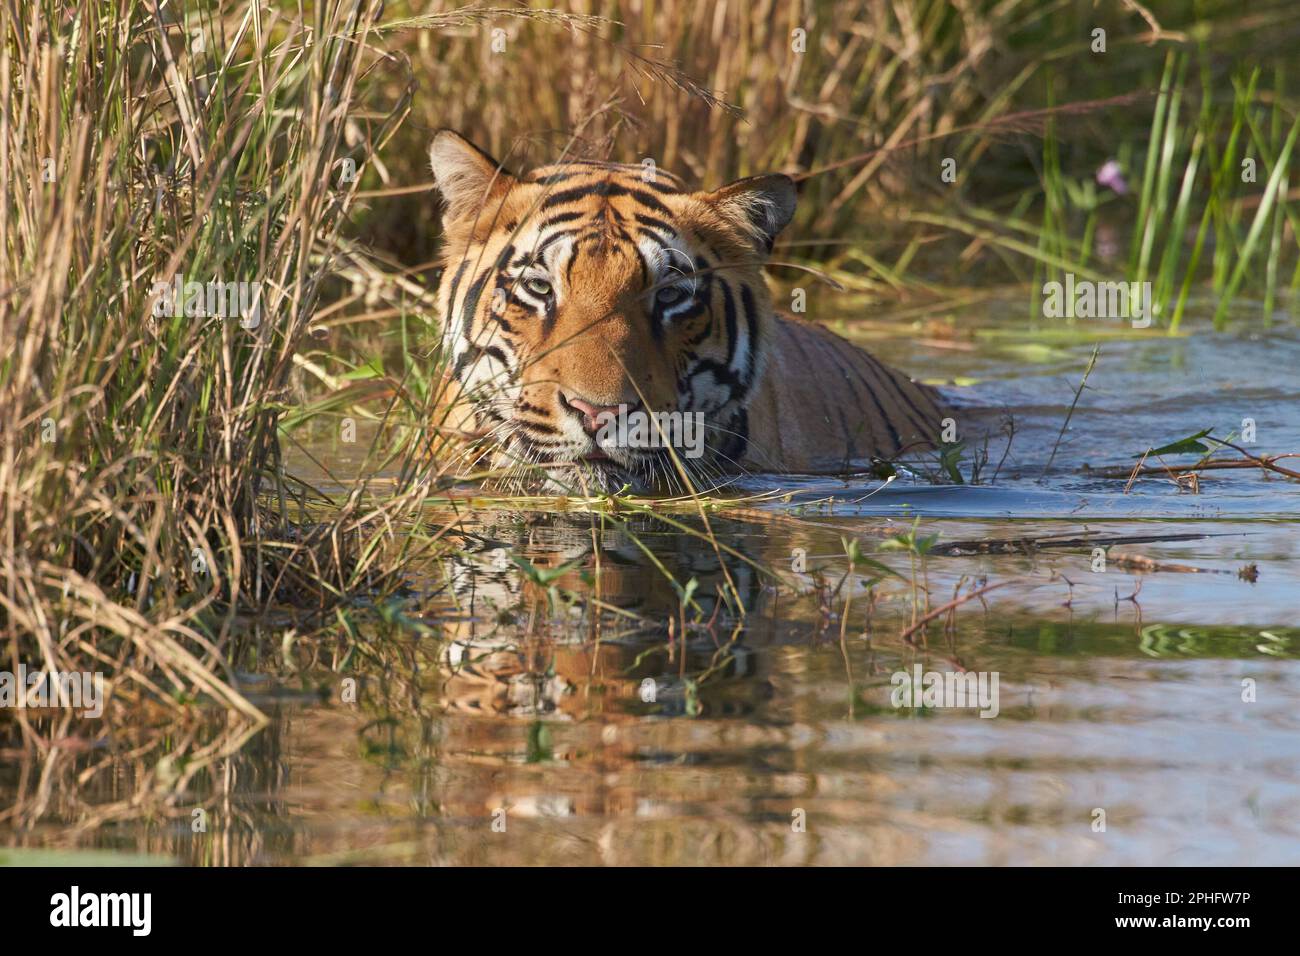 Un énorme tigre sauvage se rafraîchit dans un lac, à la réserve de tigres de Tadoba, en Inde. Les températures après la mousson peuvent encore atteindre 35 degrés celcius, et unli Banque D'Images